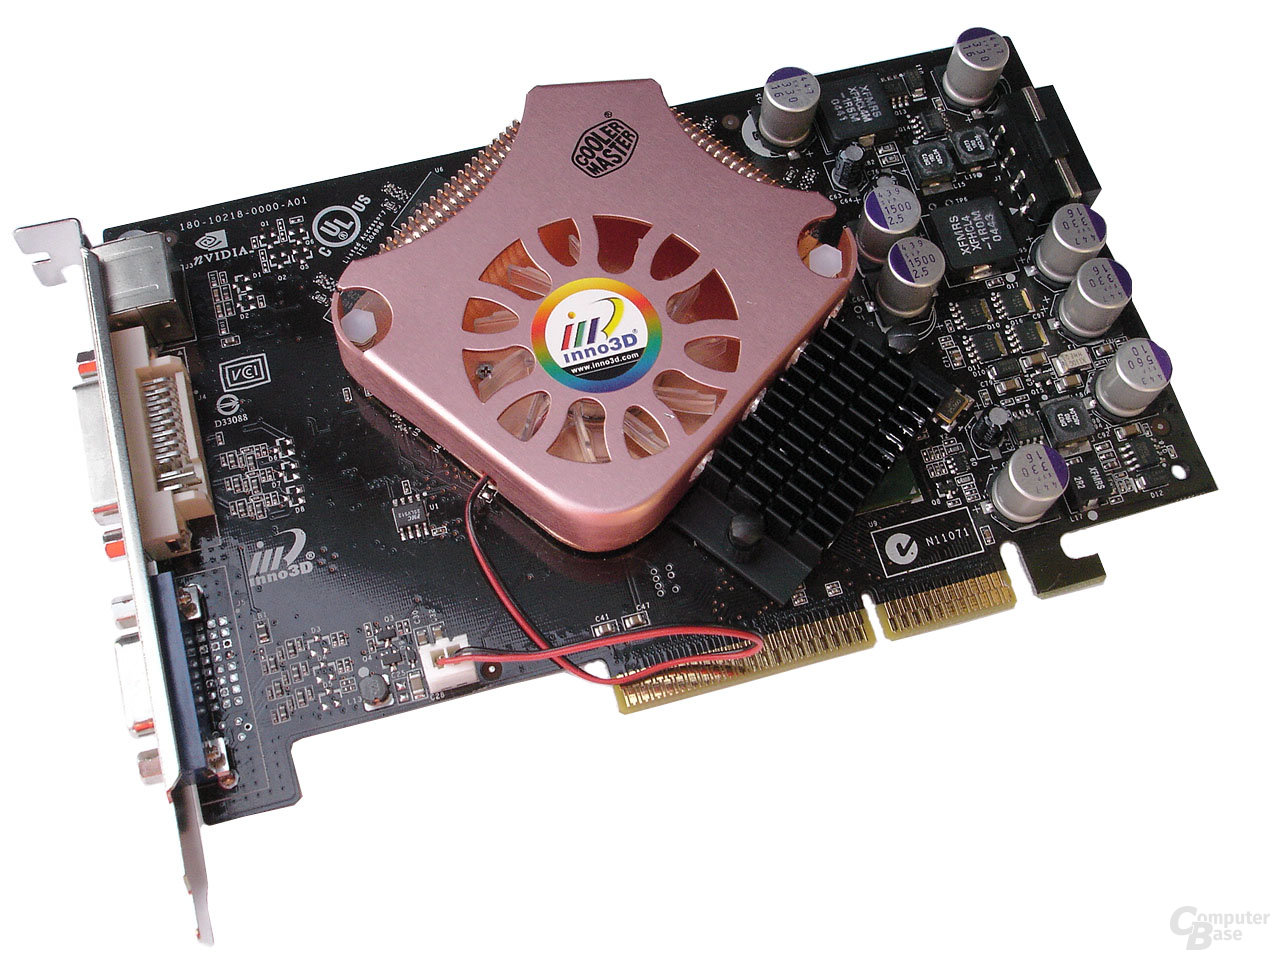 Geforce 6600 gt - Die hochwertigsten Geforce 6600 gt im Vergleich!